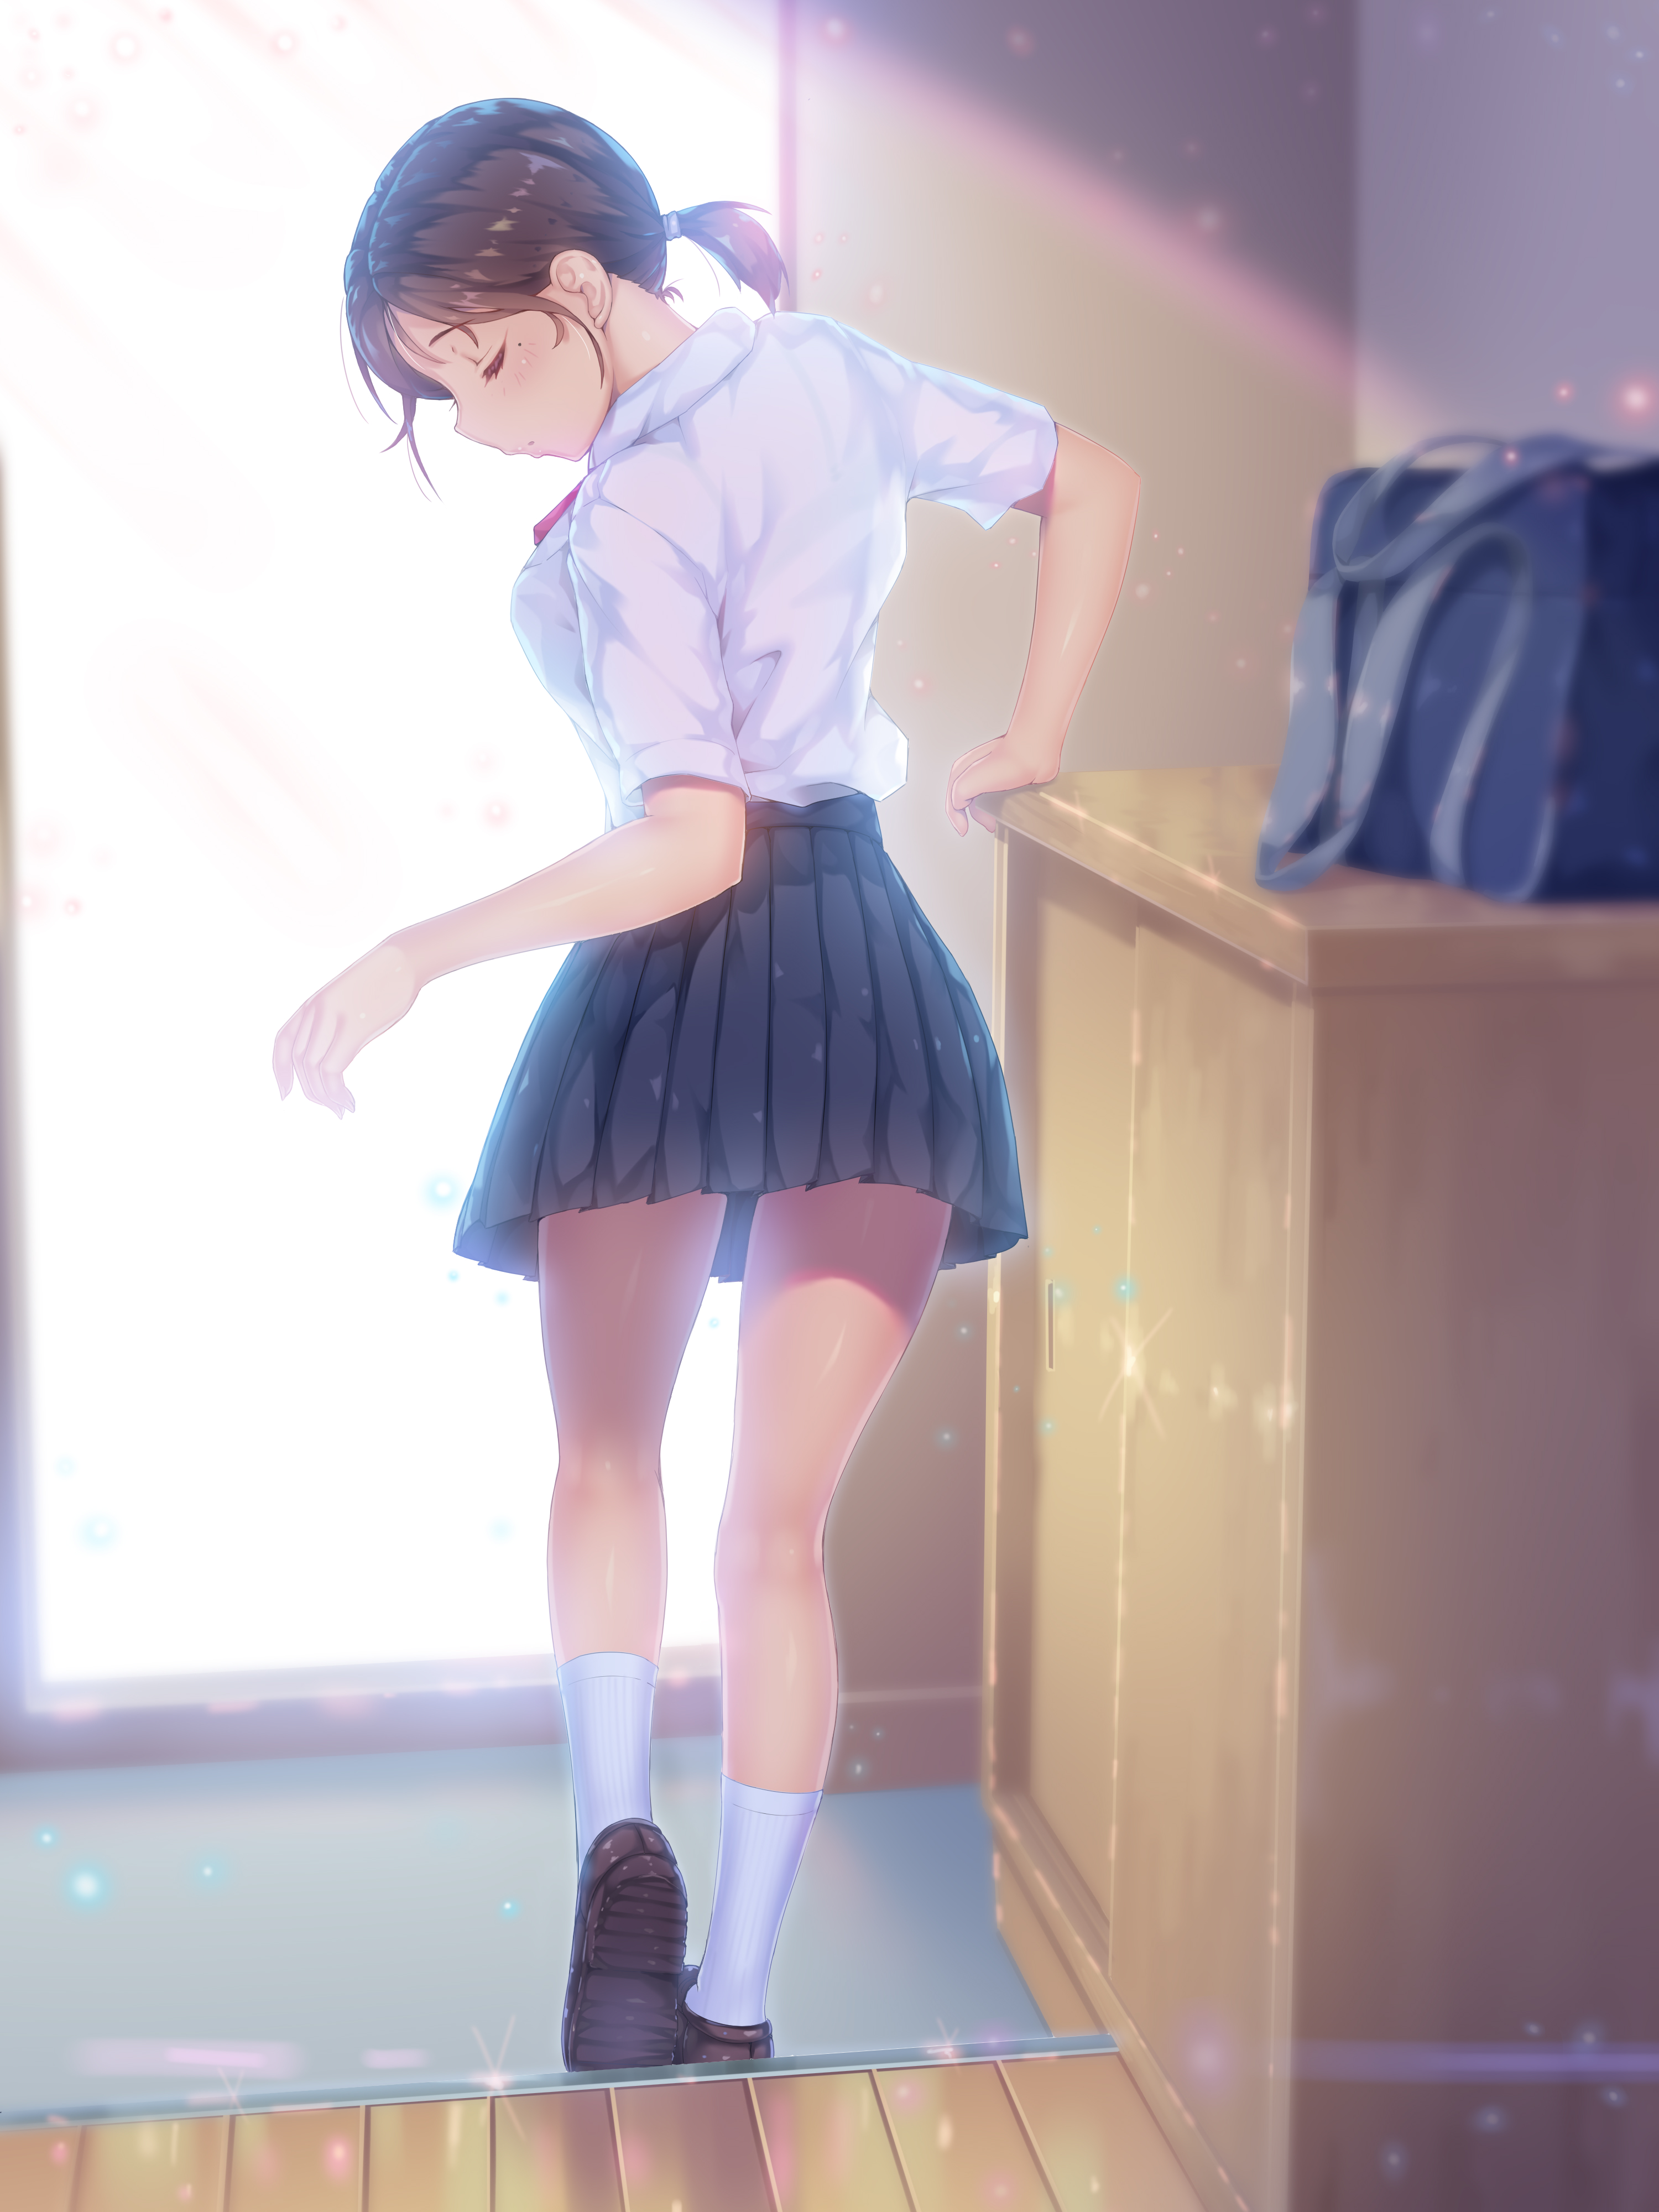 Women Brunette Anime Girls Schoolgirl School Uniform Skirt Shirt White Shirt Bow Tie Socks Backpacks 3000x4000